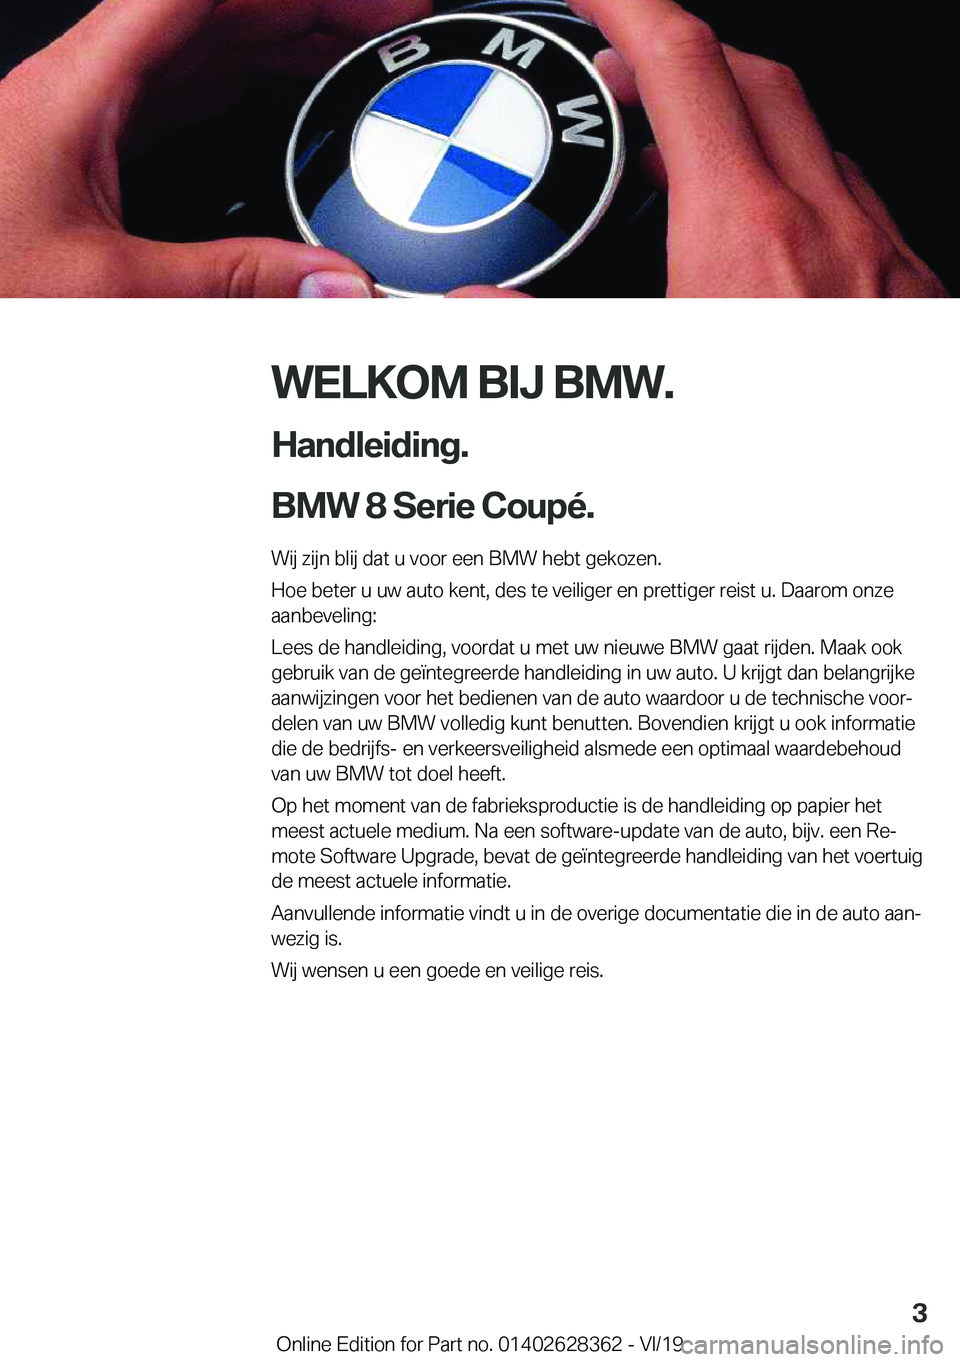 BMW 8 SERIES COUPE 2020  Instructieboekjes (in Dutch) �W�E�L�K�O�M��B�I�J��B�M�W�.
�H�a�n�d�l�e�i�d�i�n�g�.
�B�M�W��8��S�e�r�i�e��C�o�u�p�